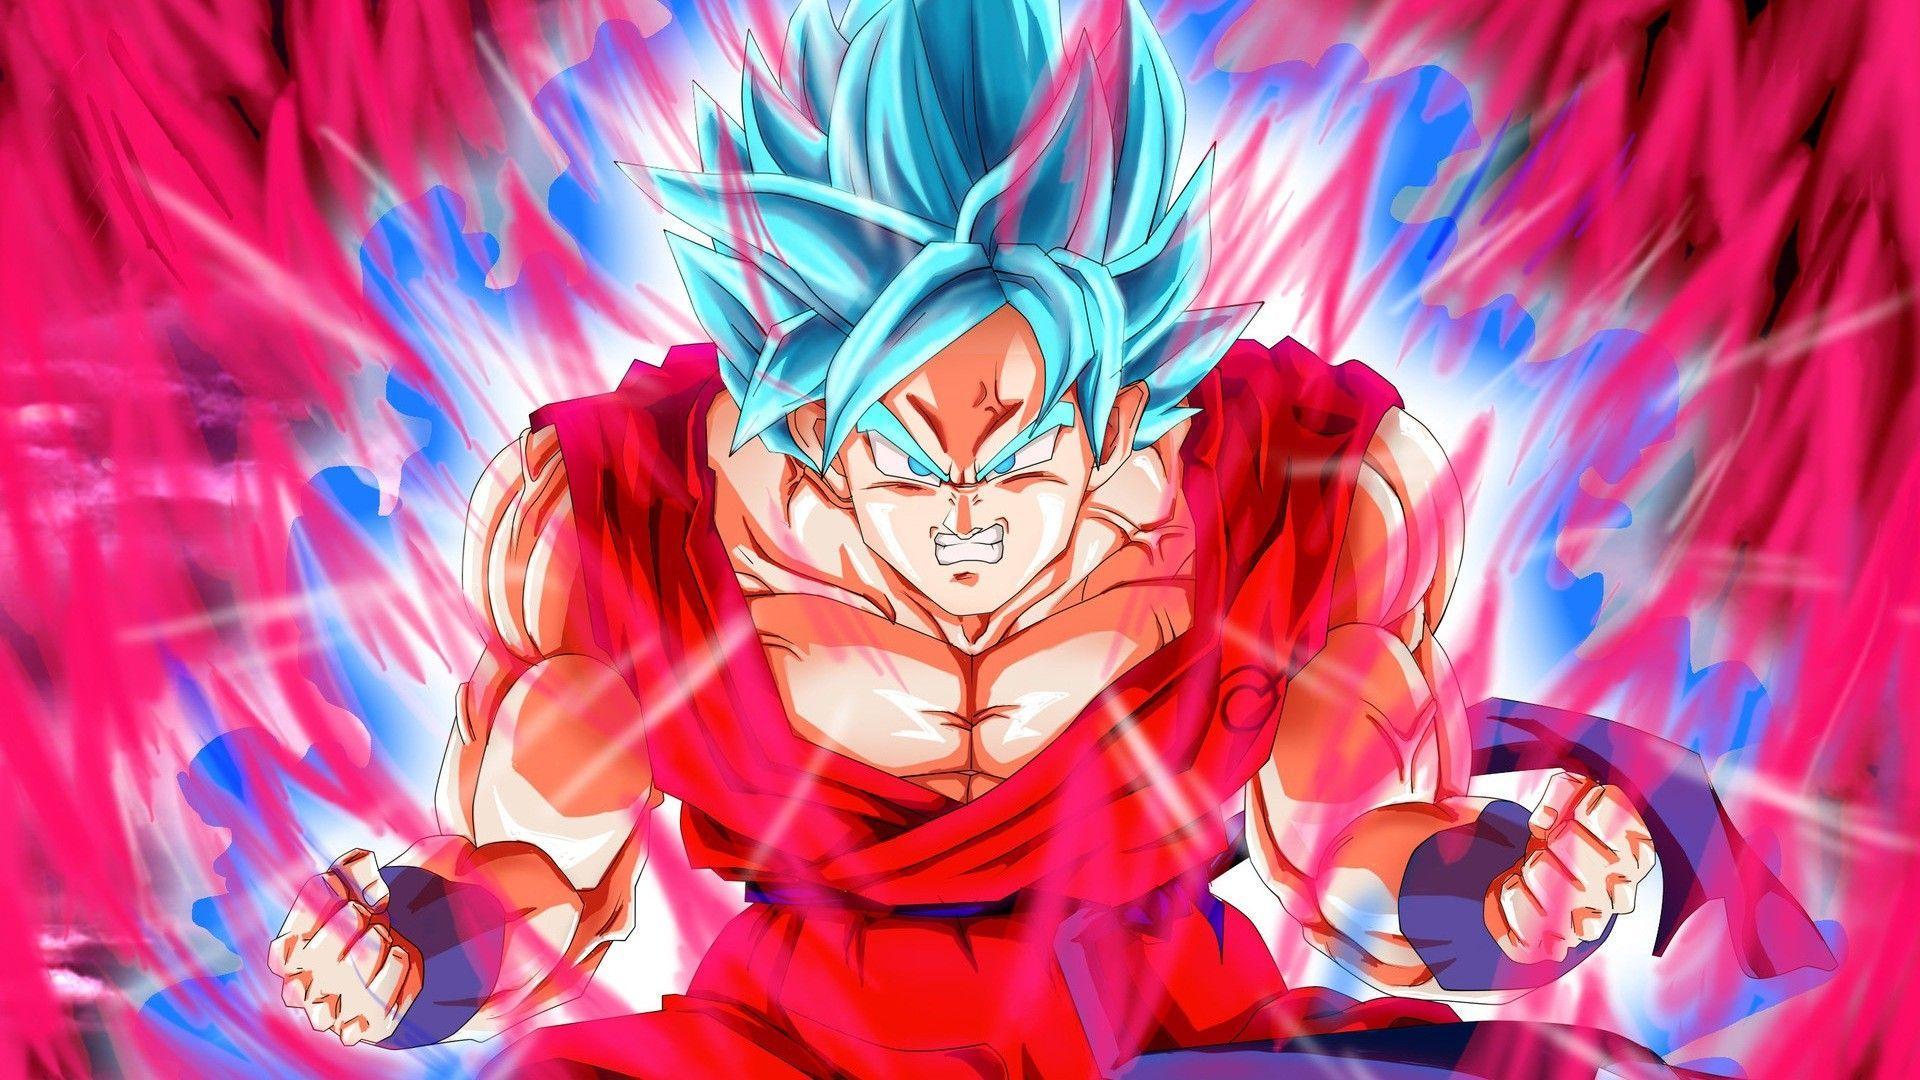 Goku Wallpaper Super Saiyan Blue. Goku wallpaper, Anime, Goku